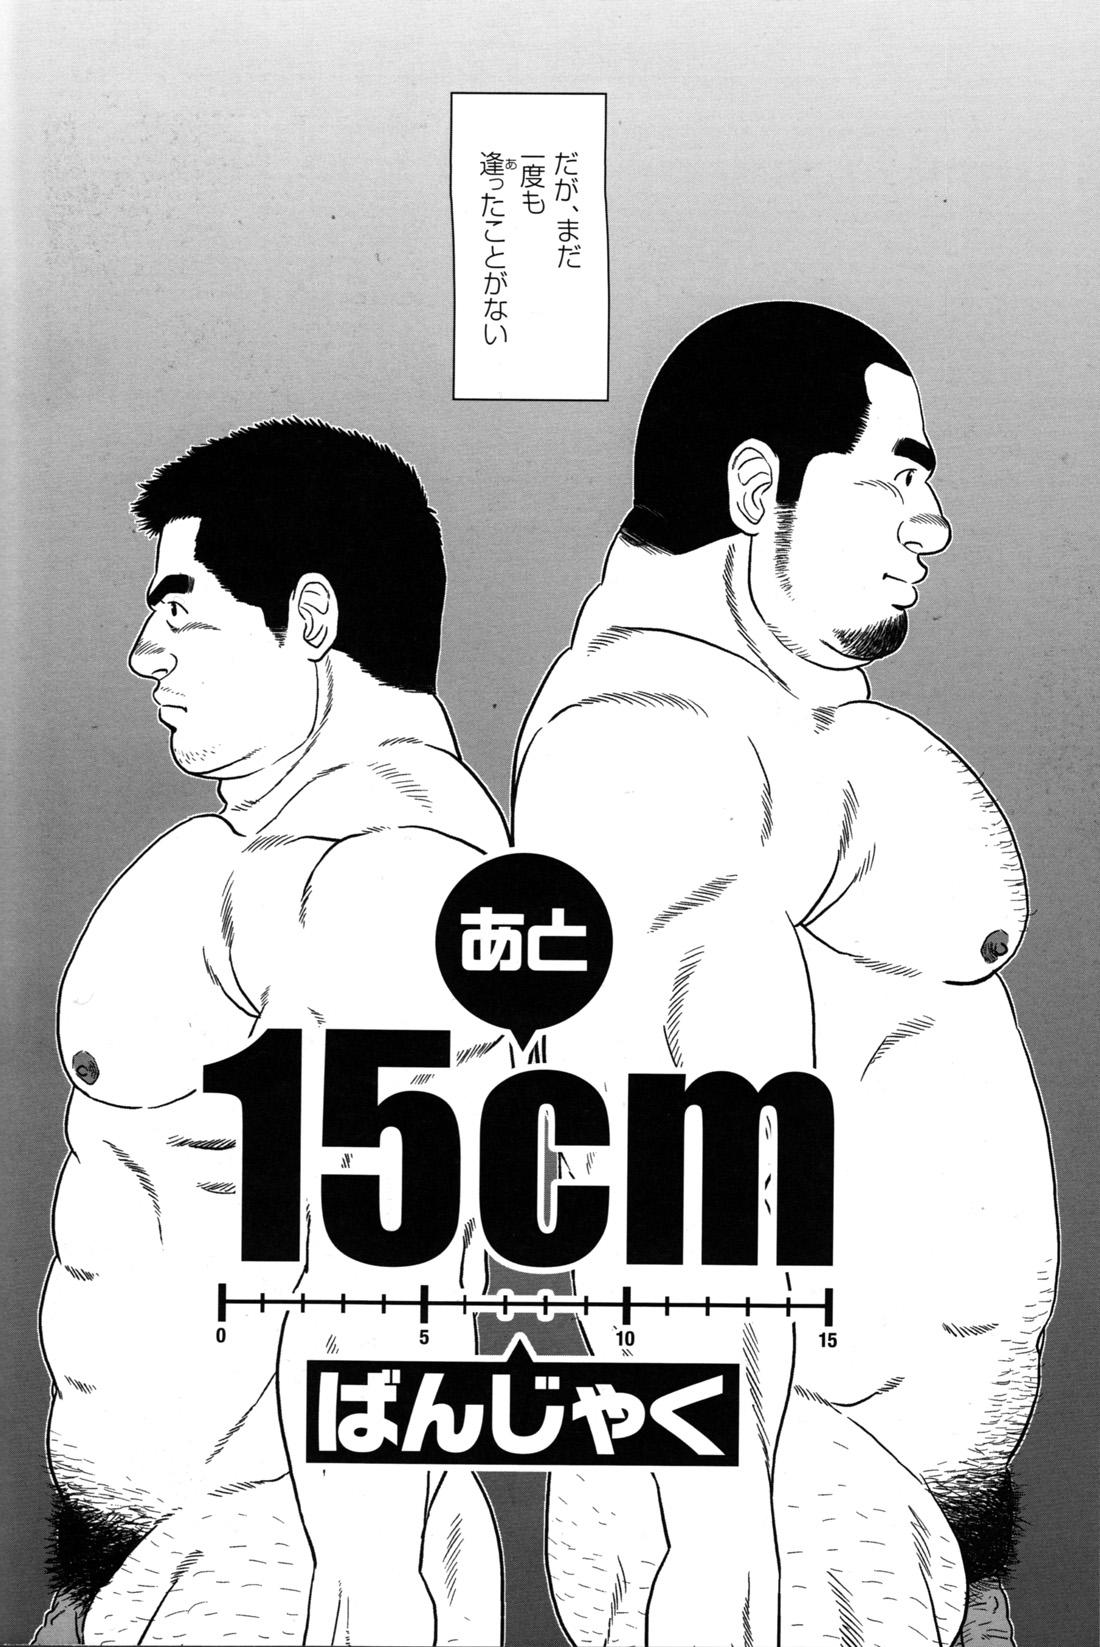 Comic G-men Gaho No.09 Gacchibi Zeme 73